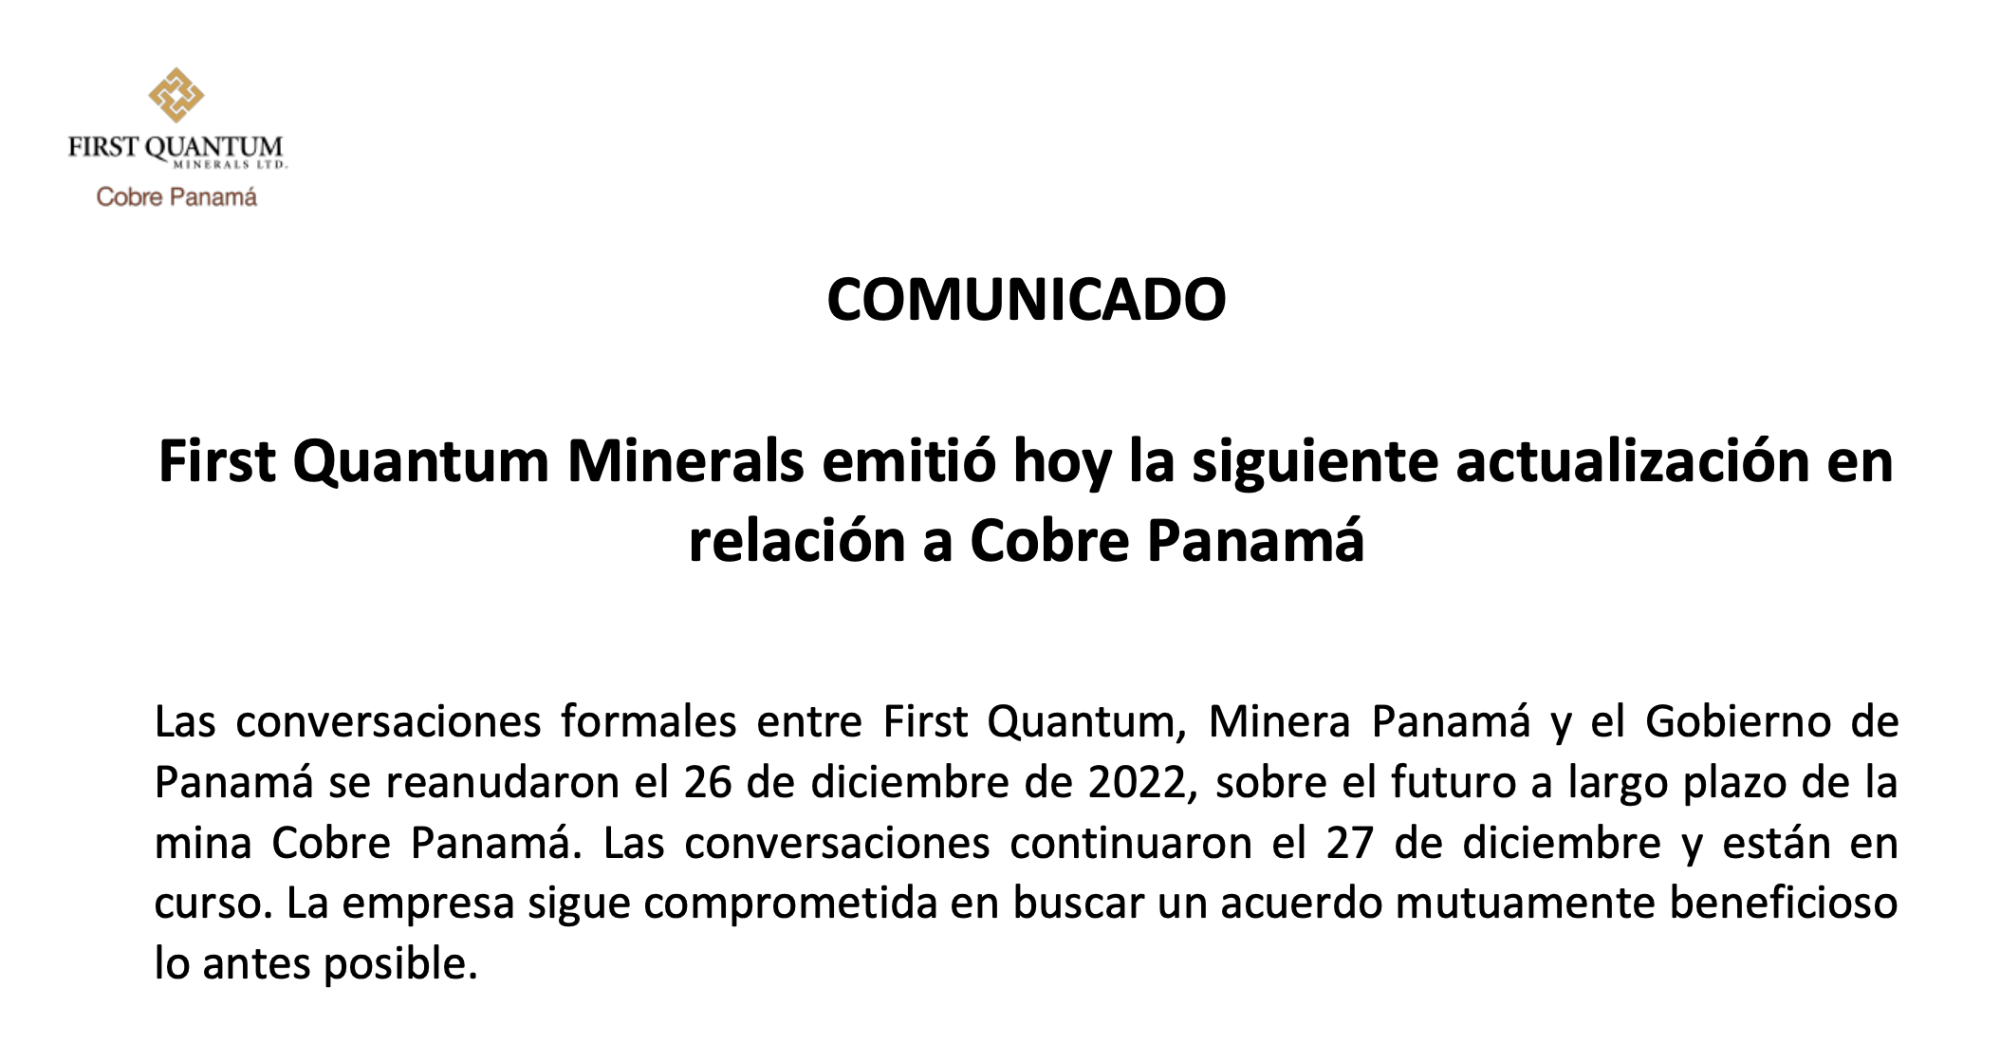 First Quantum Minerals emitió hoy la siguiente actualización en relación a Cobre Panamá